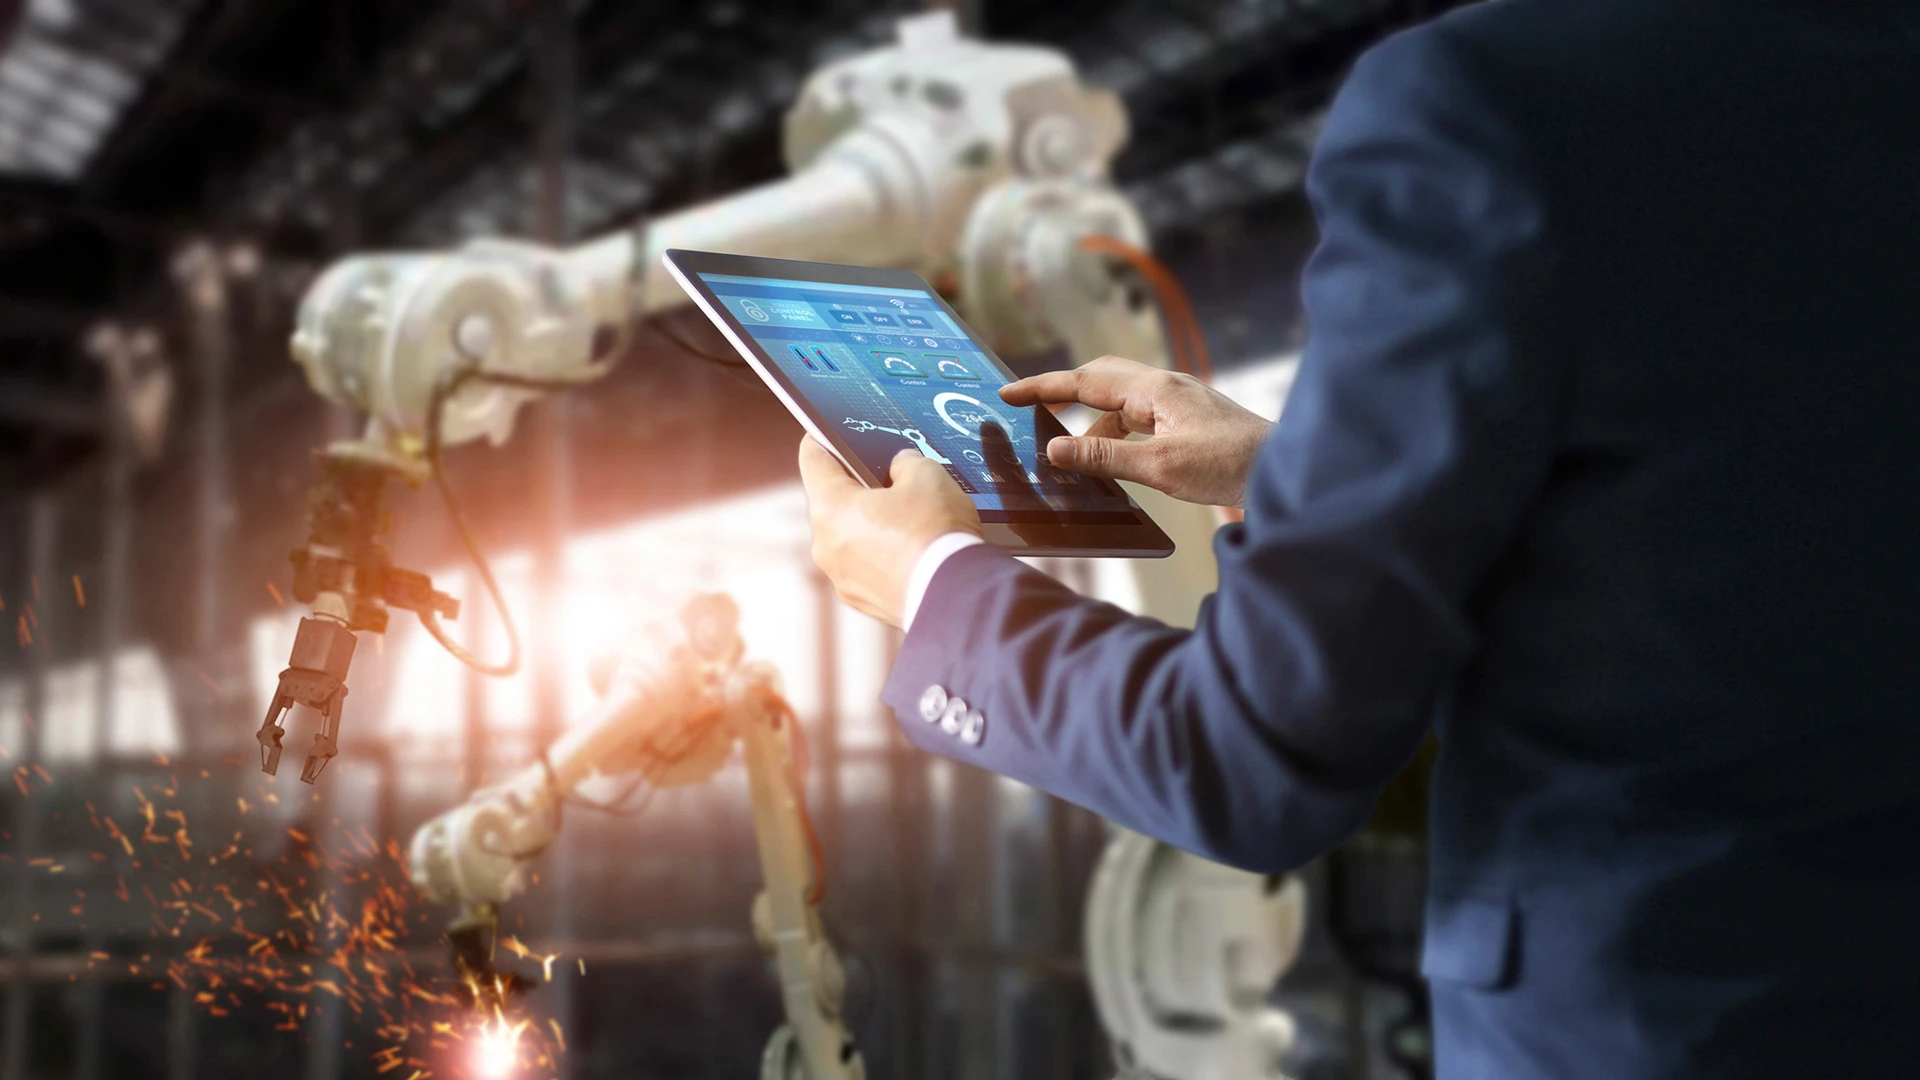 Een persoon op een tablet aan het werk in een slimme fabriek met robotarmen.